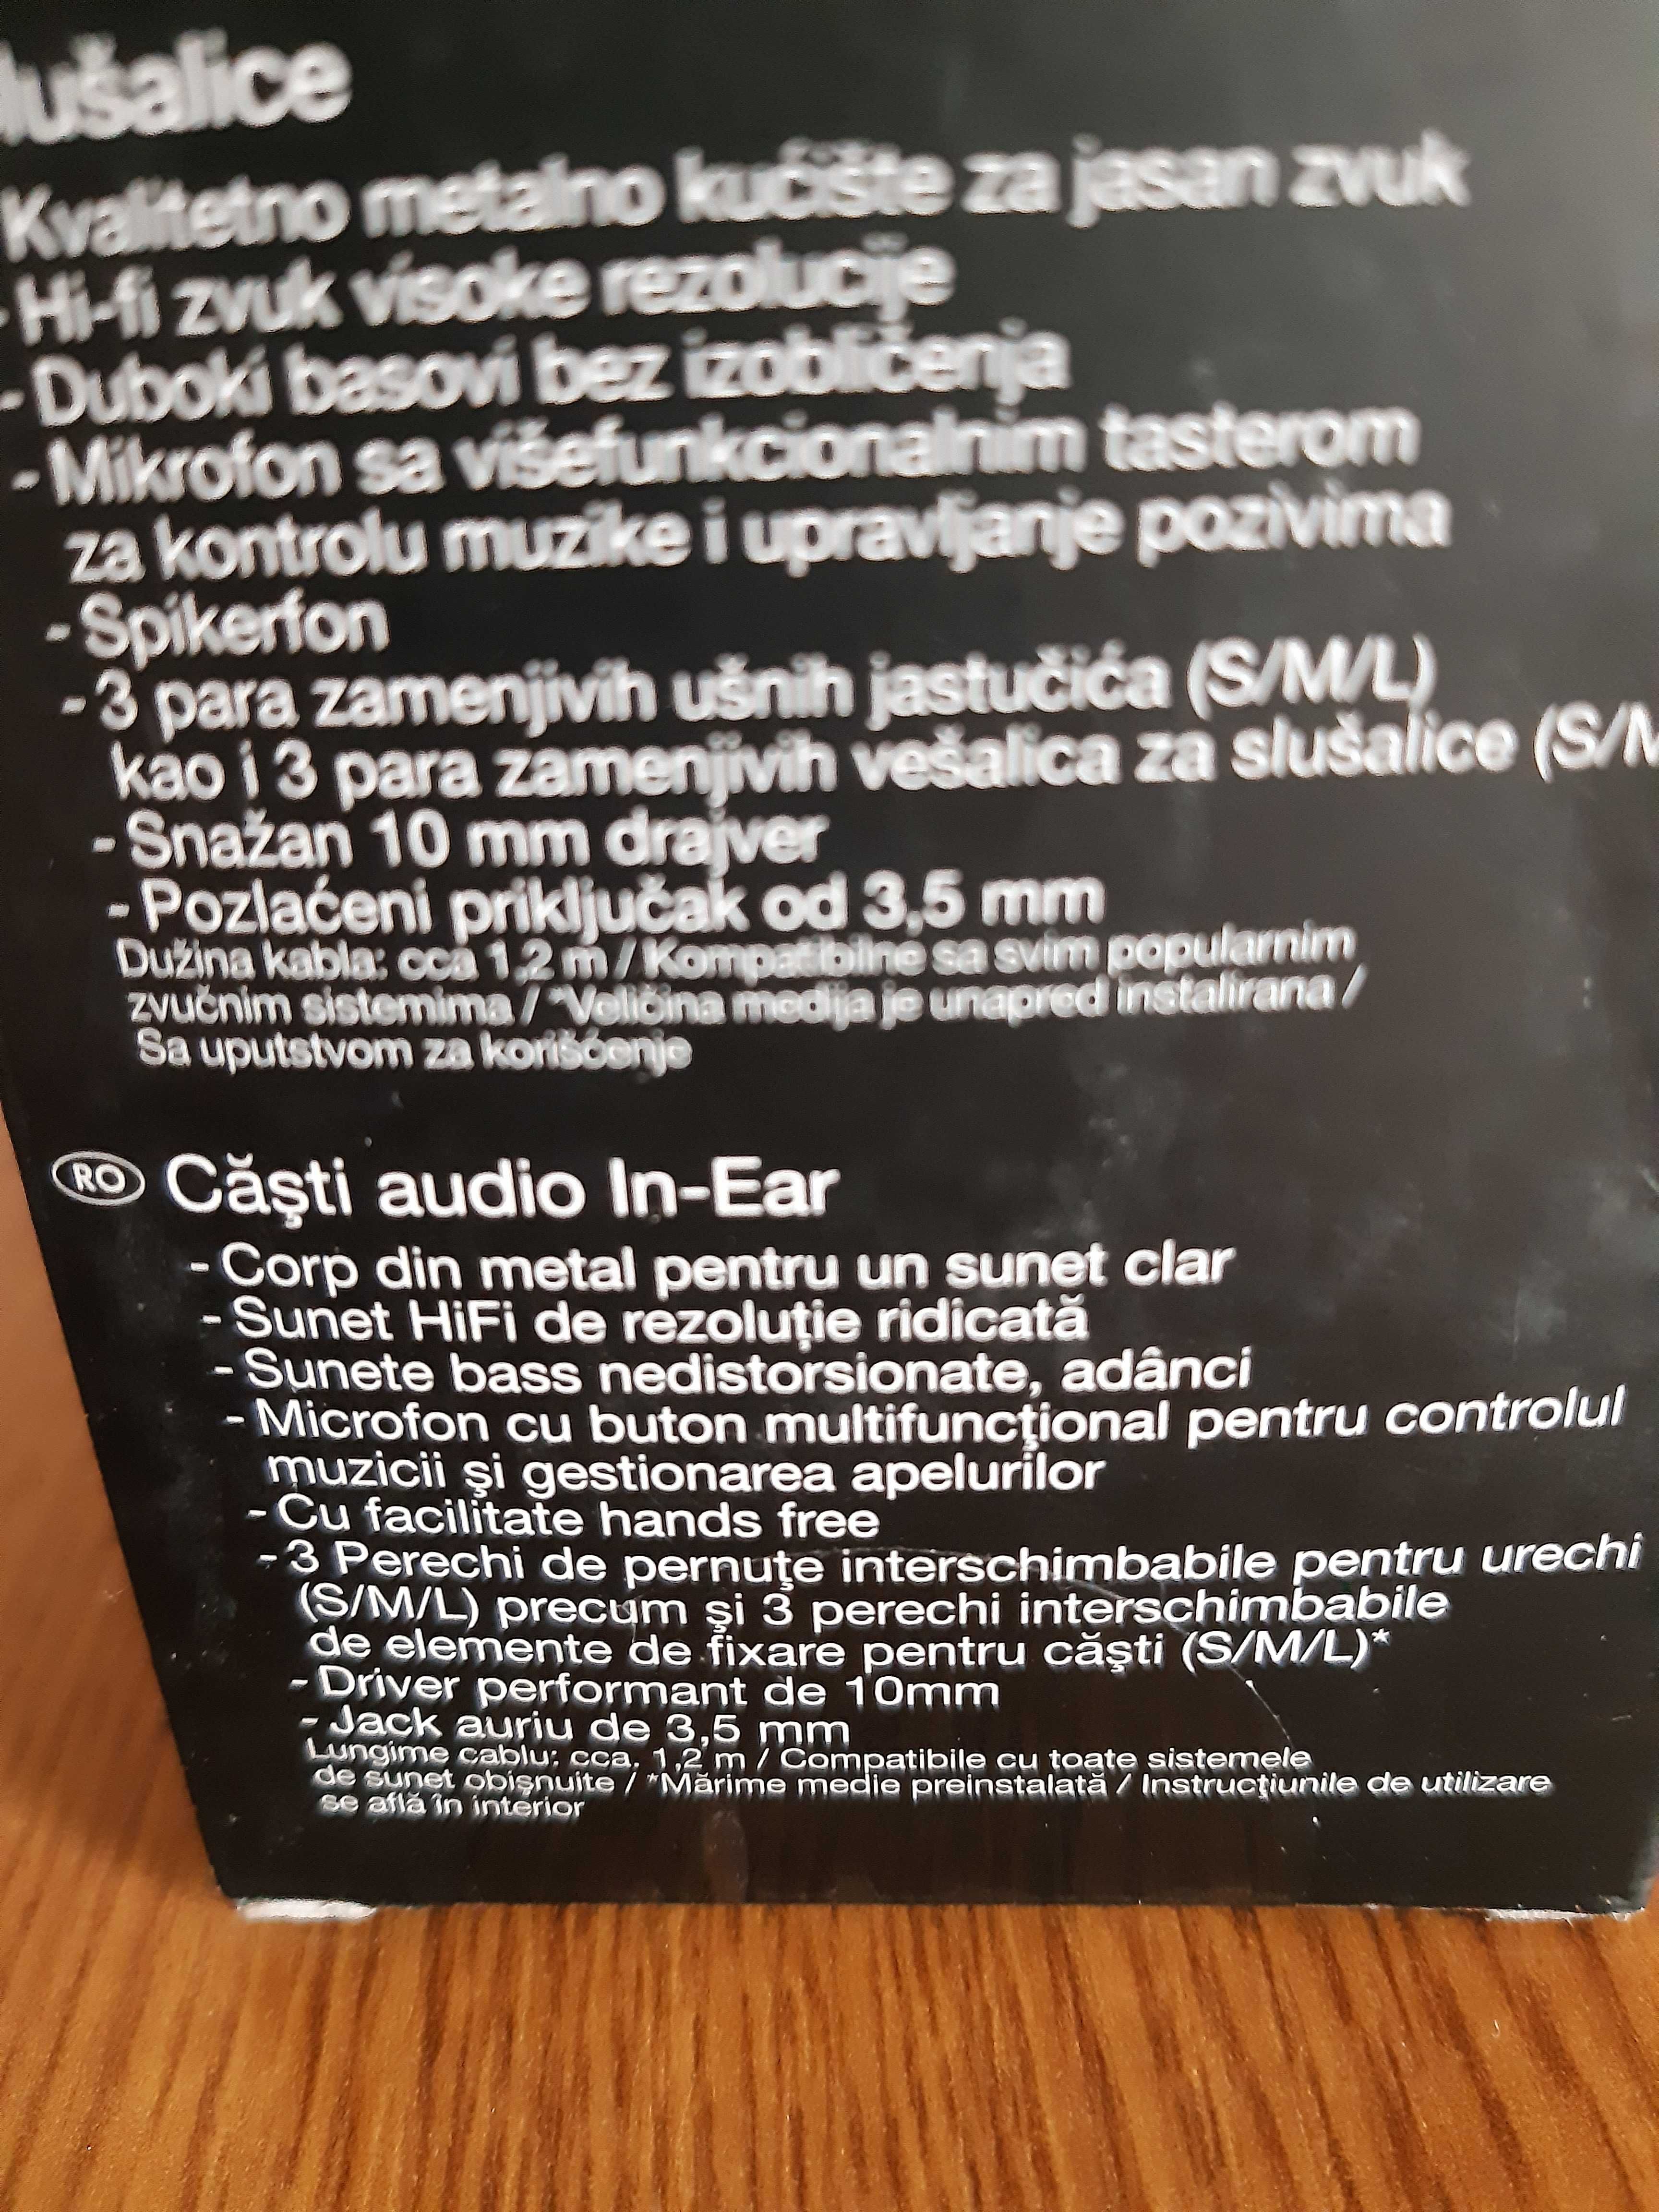 Casti audio in-ear